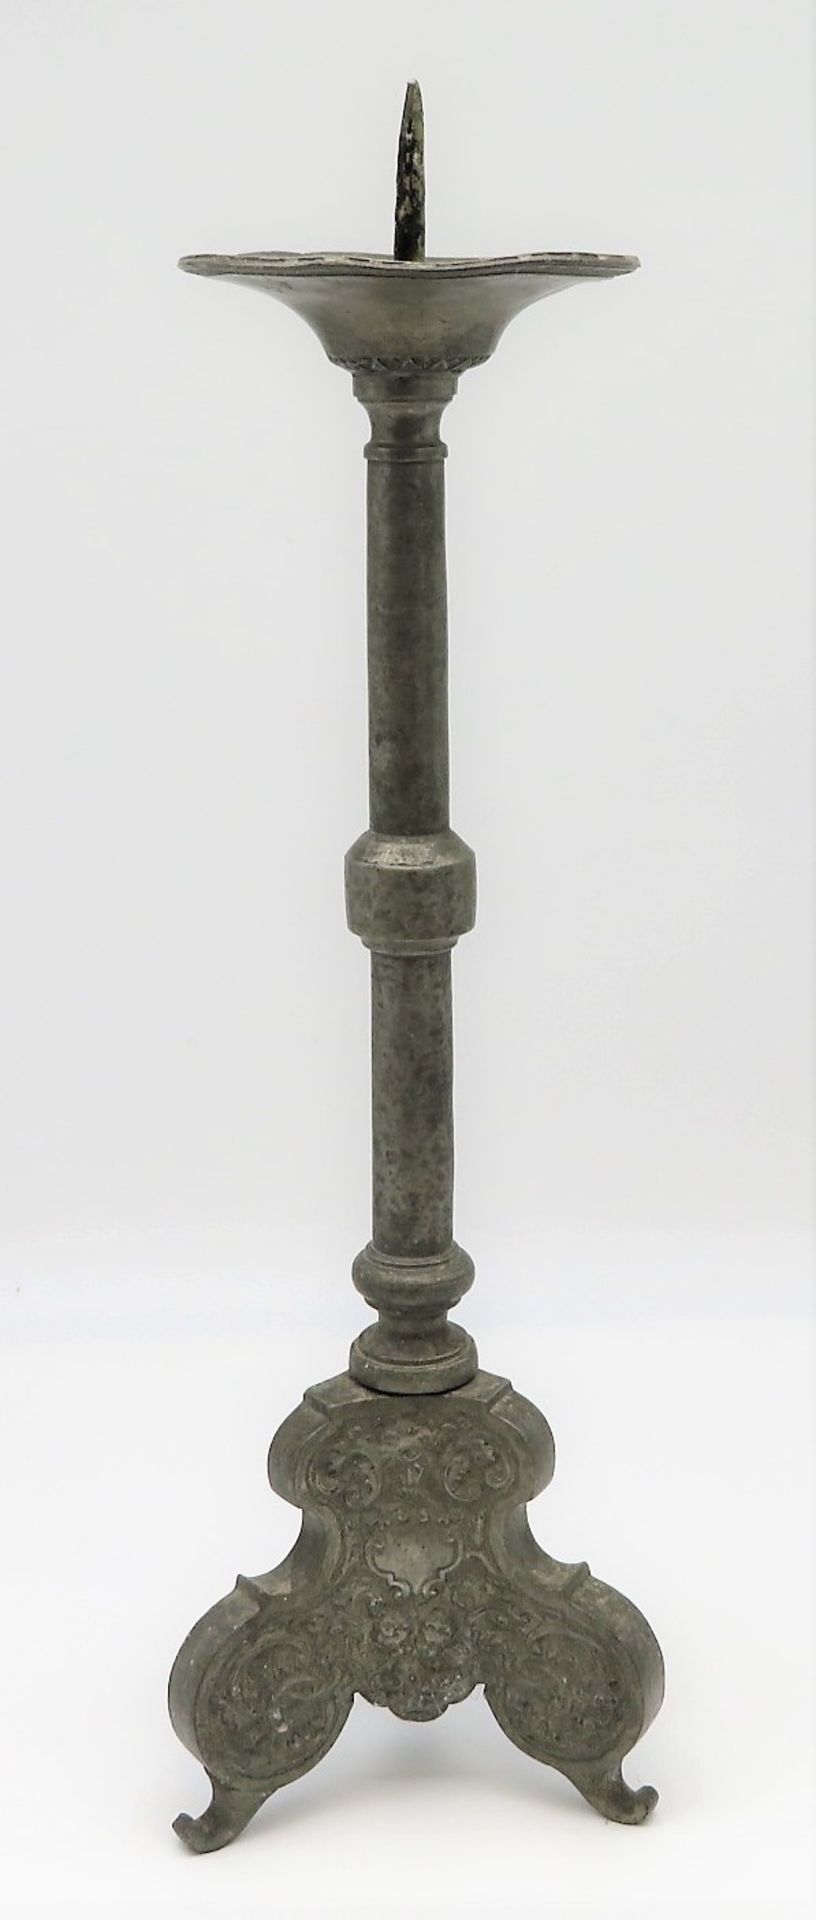 Kirchenkerzenleuchter, 18./19. Jahrhundert, Zinn, h 52 cm, d 15,5 cm.